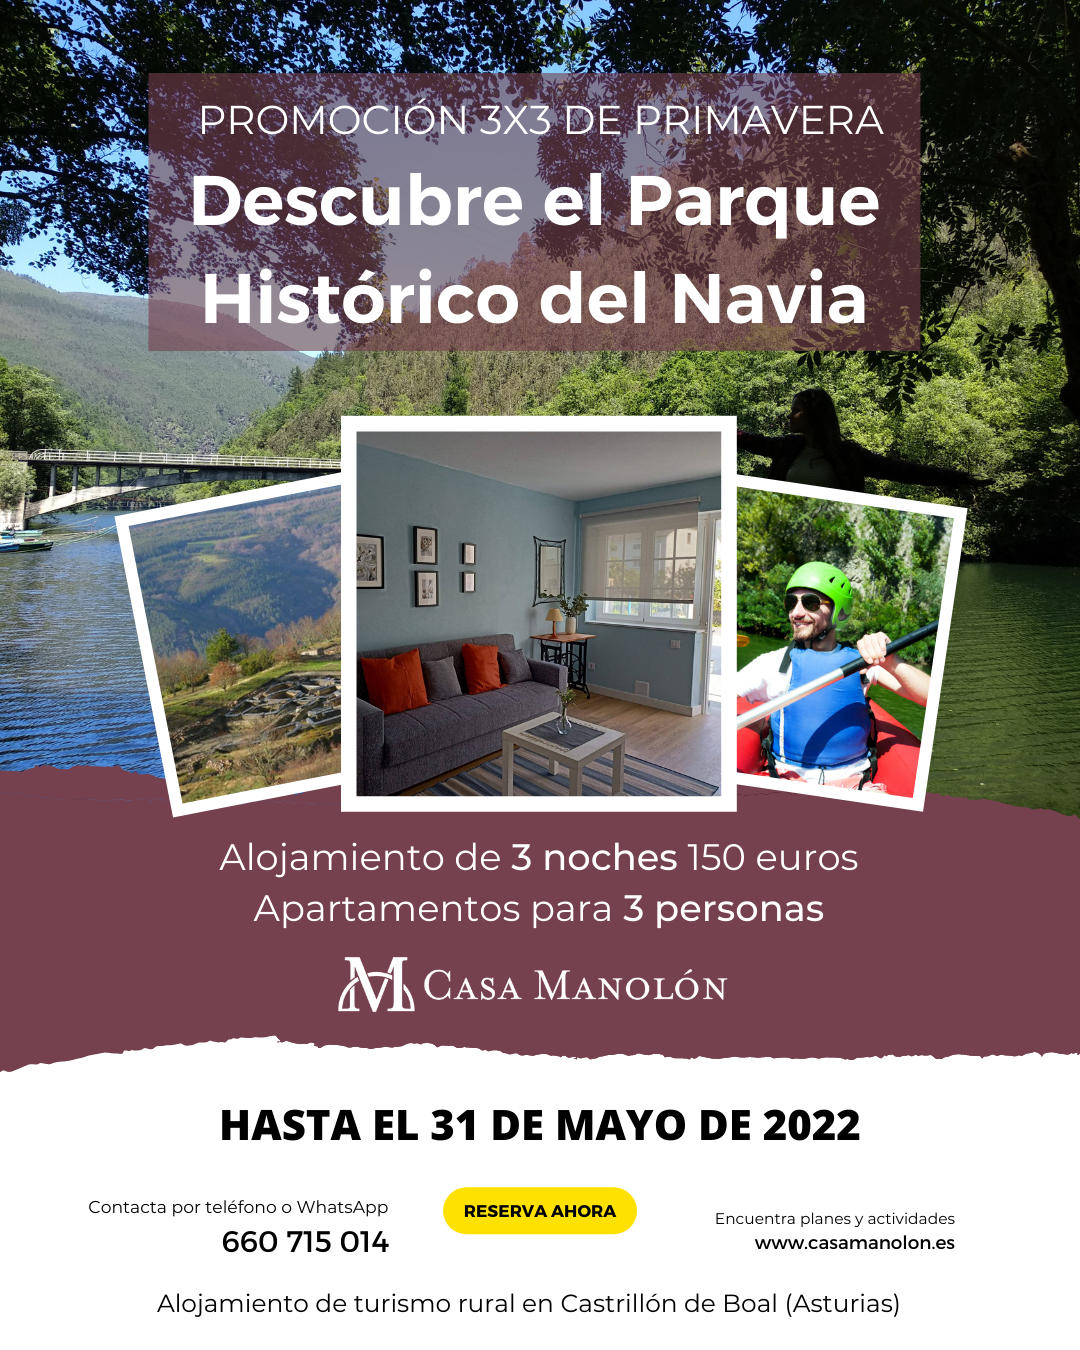 Promoción 3×3 de Primavera: descubre el Parque Histórico del Navia